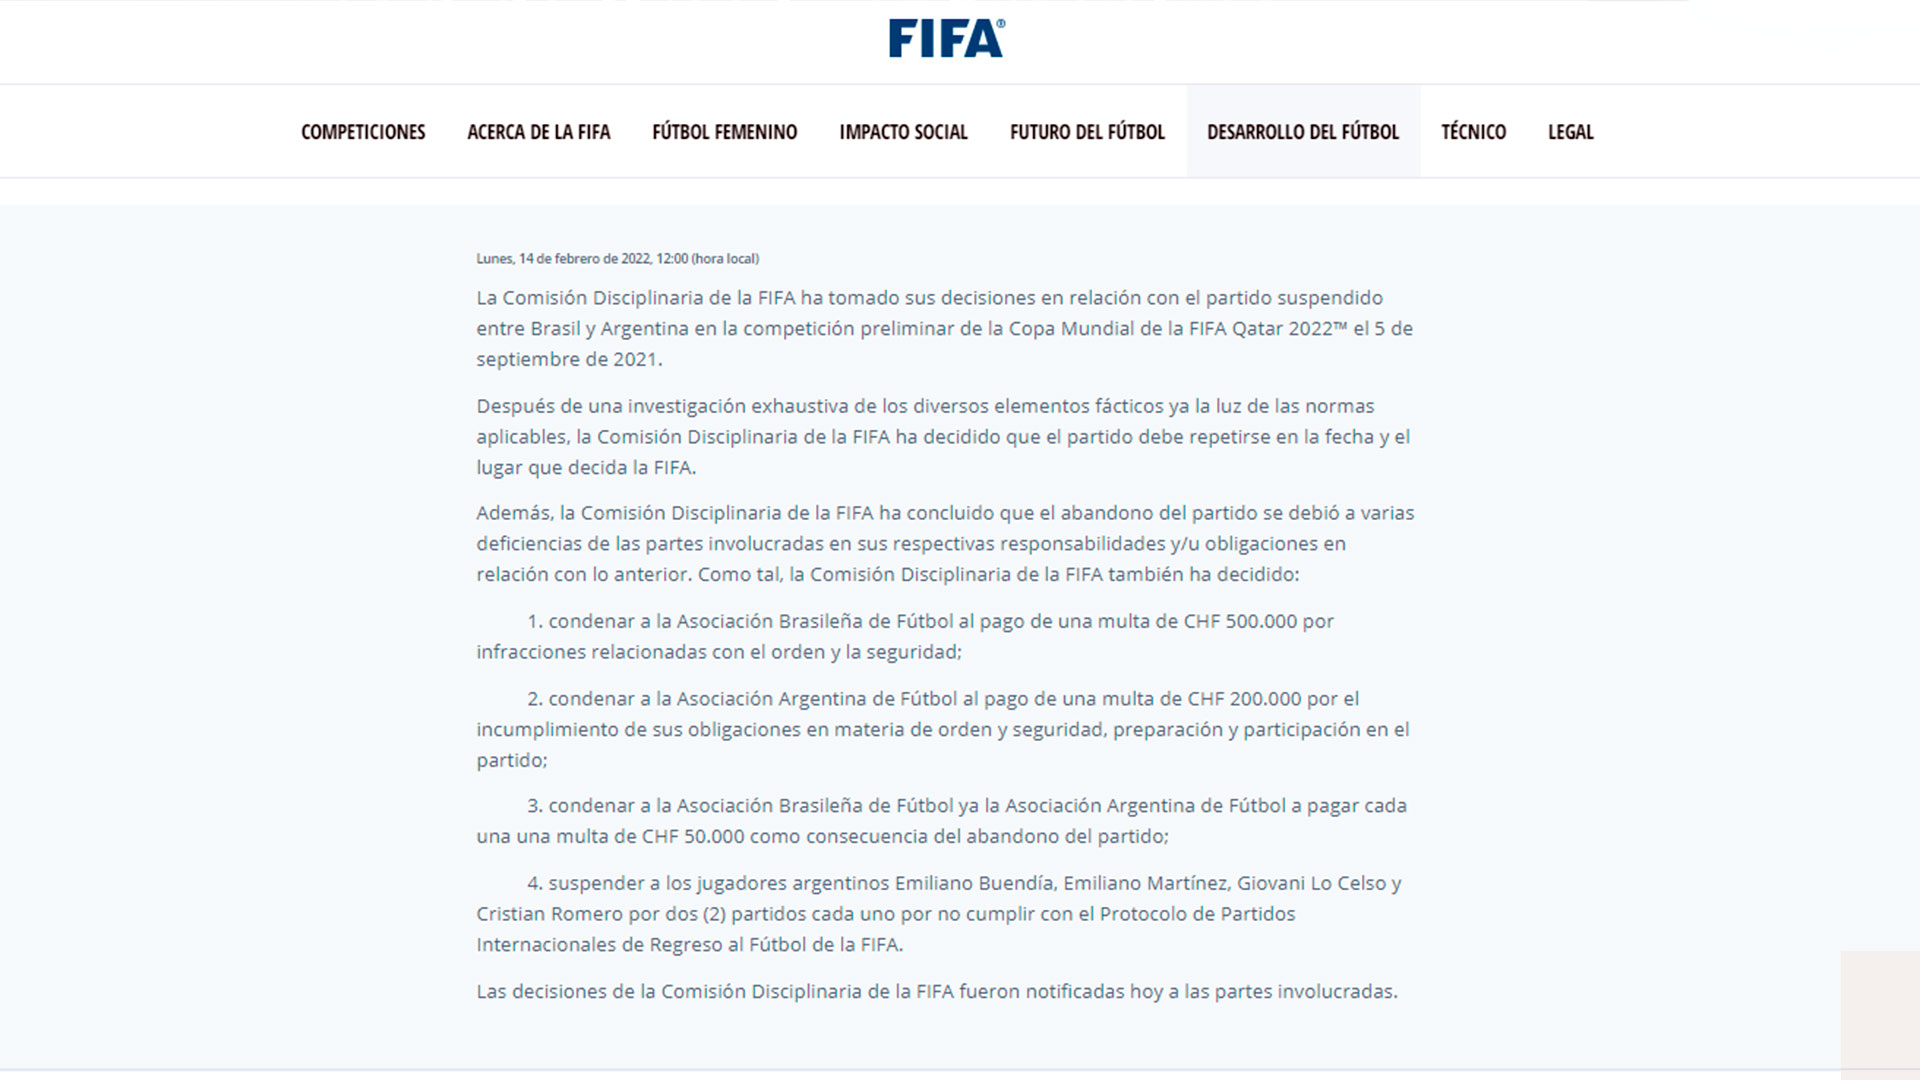 El comunicado de FIFA sobre el partido entre Argentina y Brasil